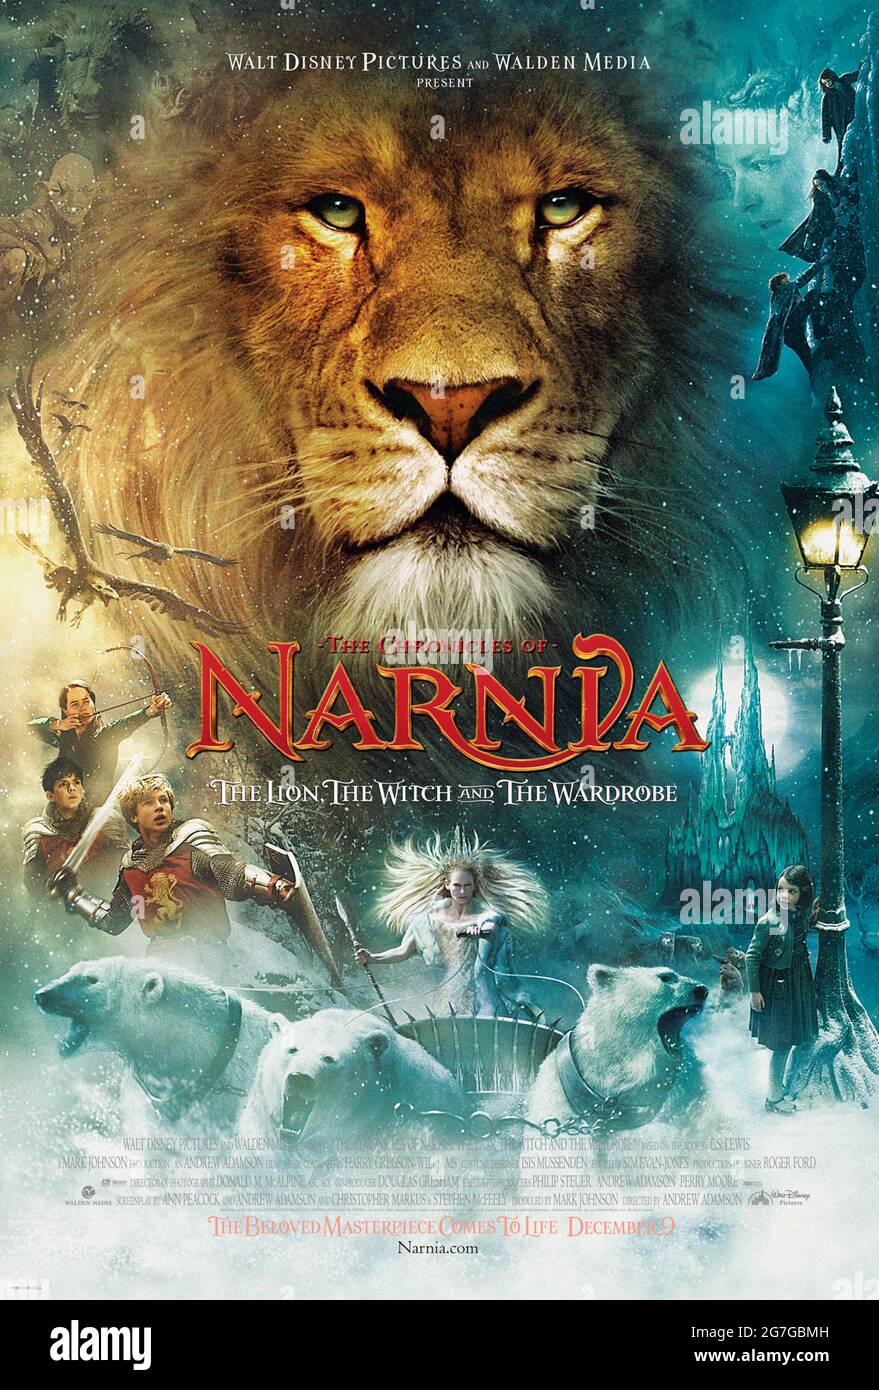 Les chroniques de Narnia: Le Lion, la Sorcière et la garde-robe (2005)  réalisé par Andrew Adamson et avec Tilda Swinton, Georgie Henley, William  Moseley et James McAvoy. Adaptation grand écran de la